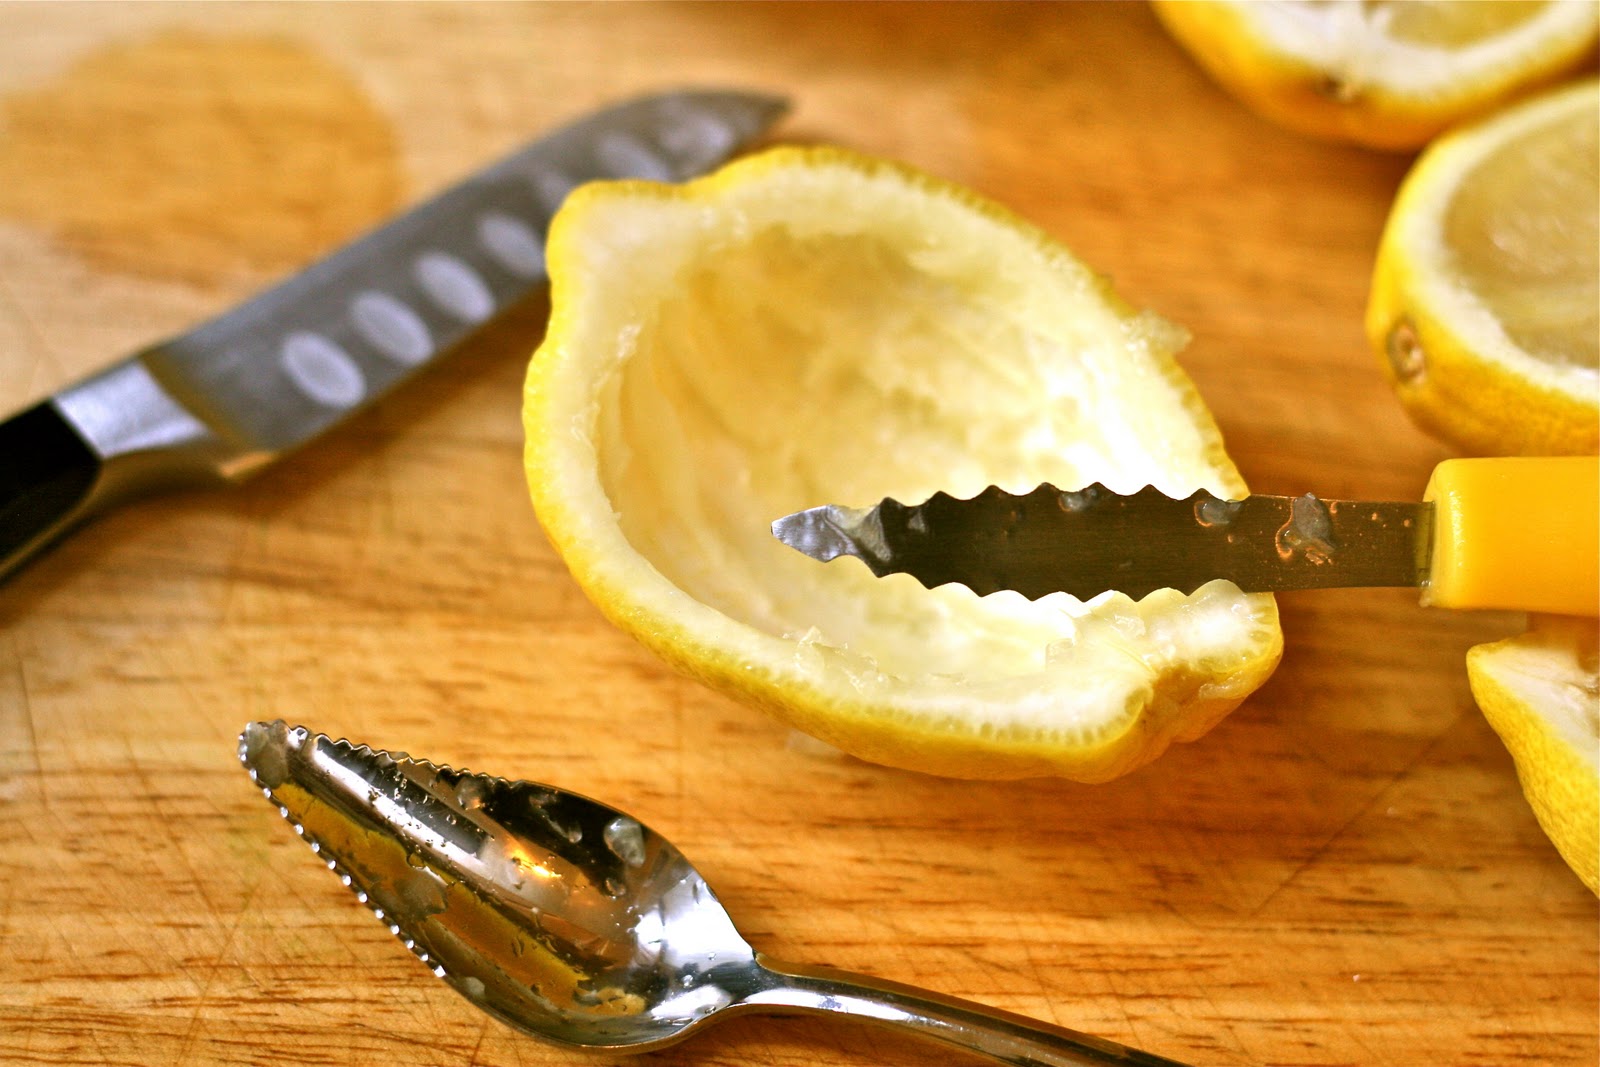 Кожура овощей. Срезать кожицу с овощей. Нож для срезания кожуры апельсина. Лимон со срезанной шкуркой. Кожура лимона польза